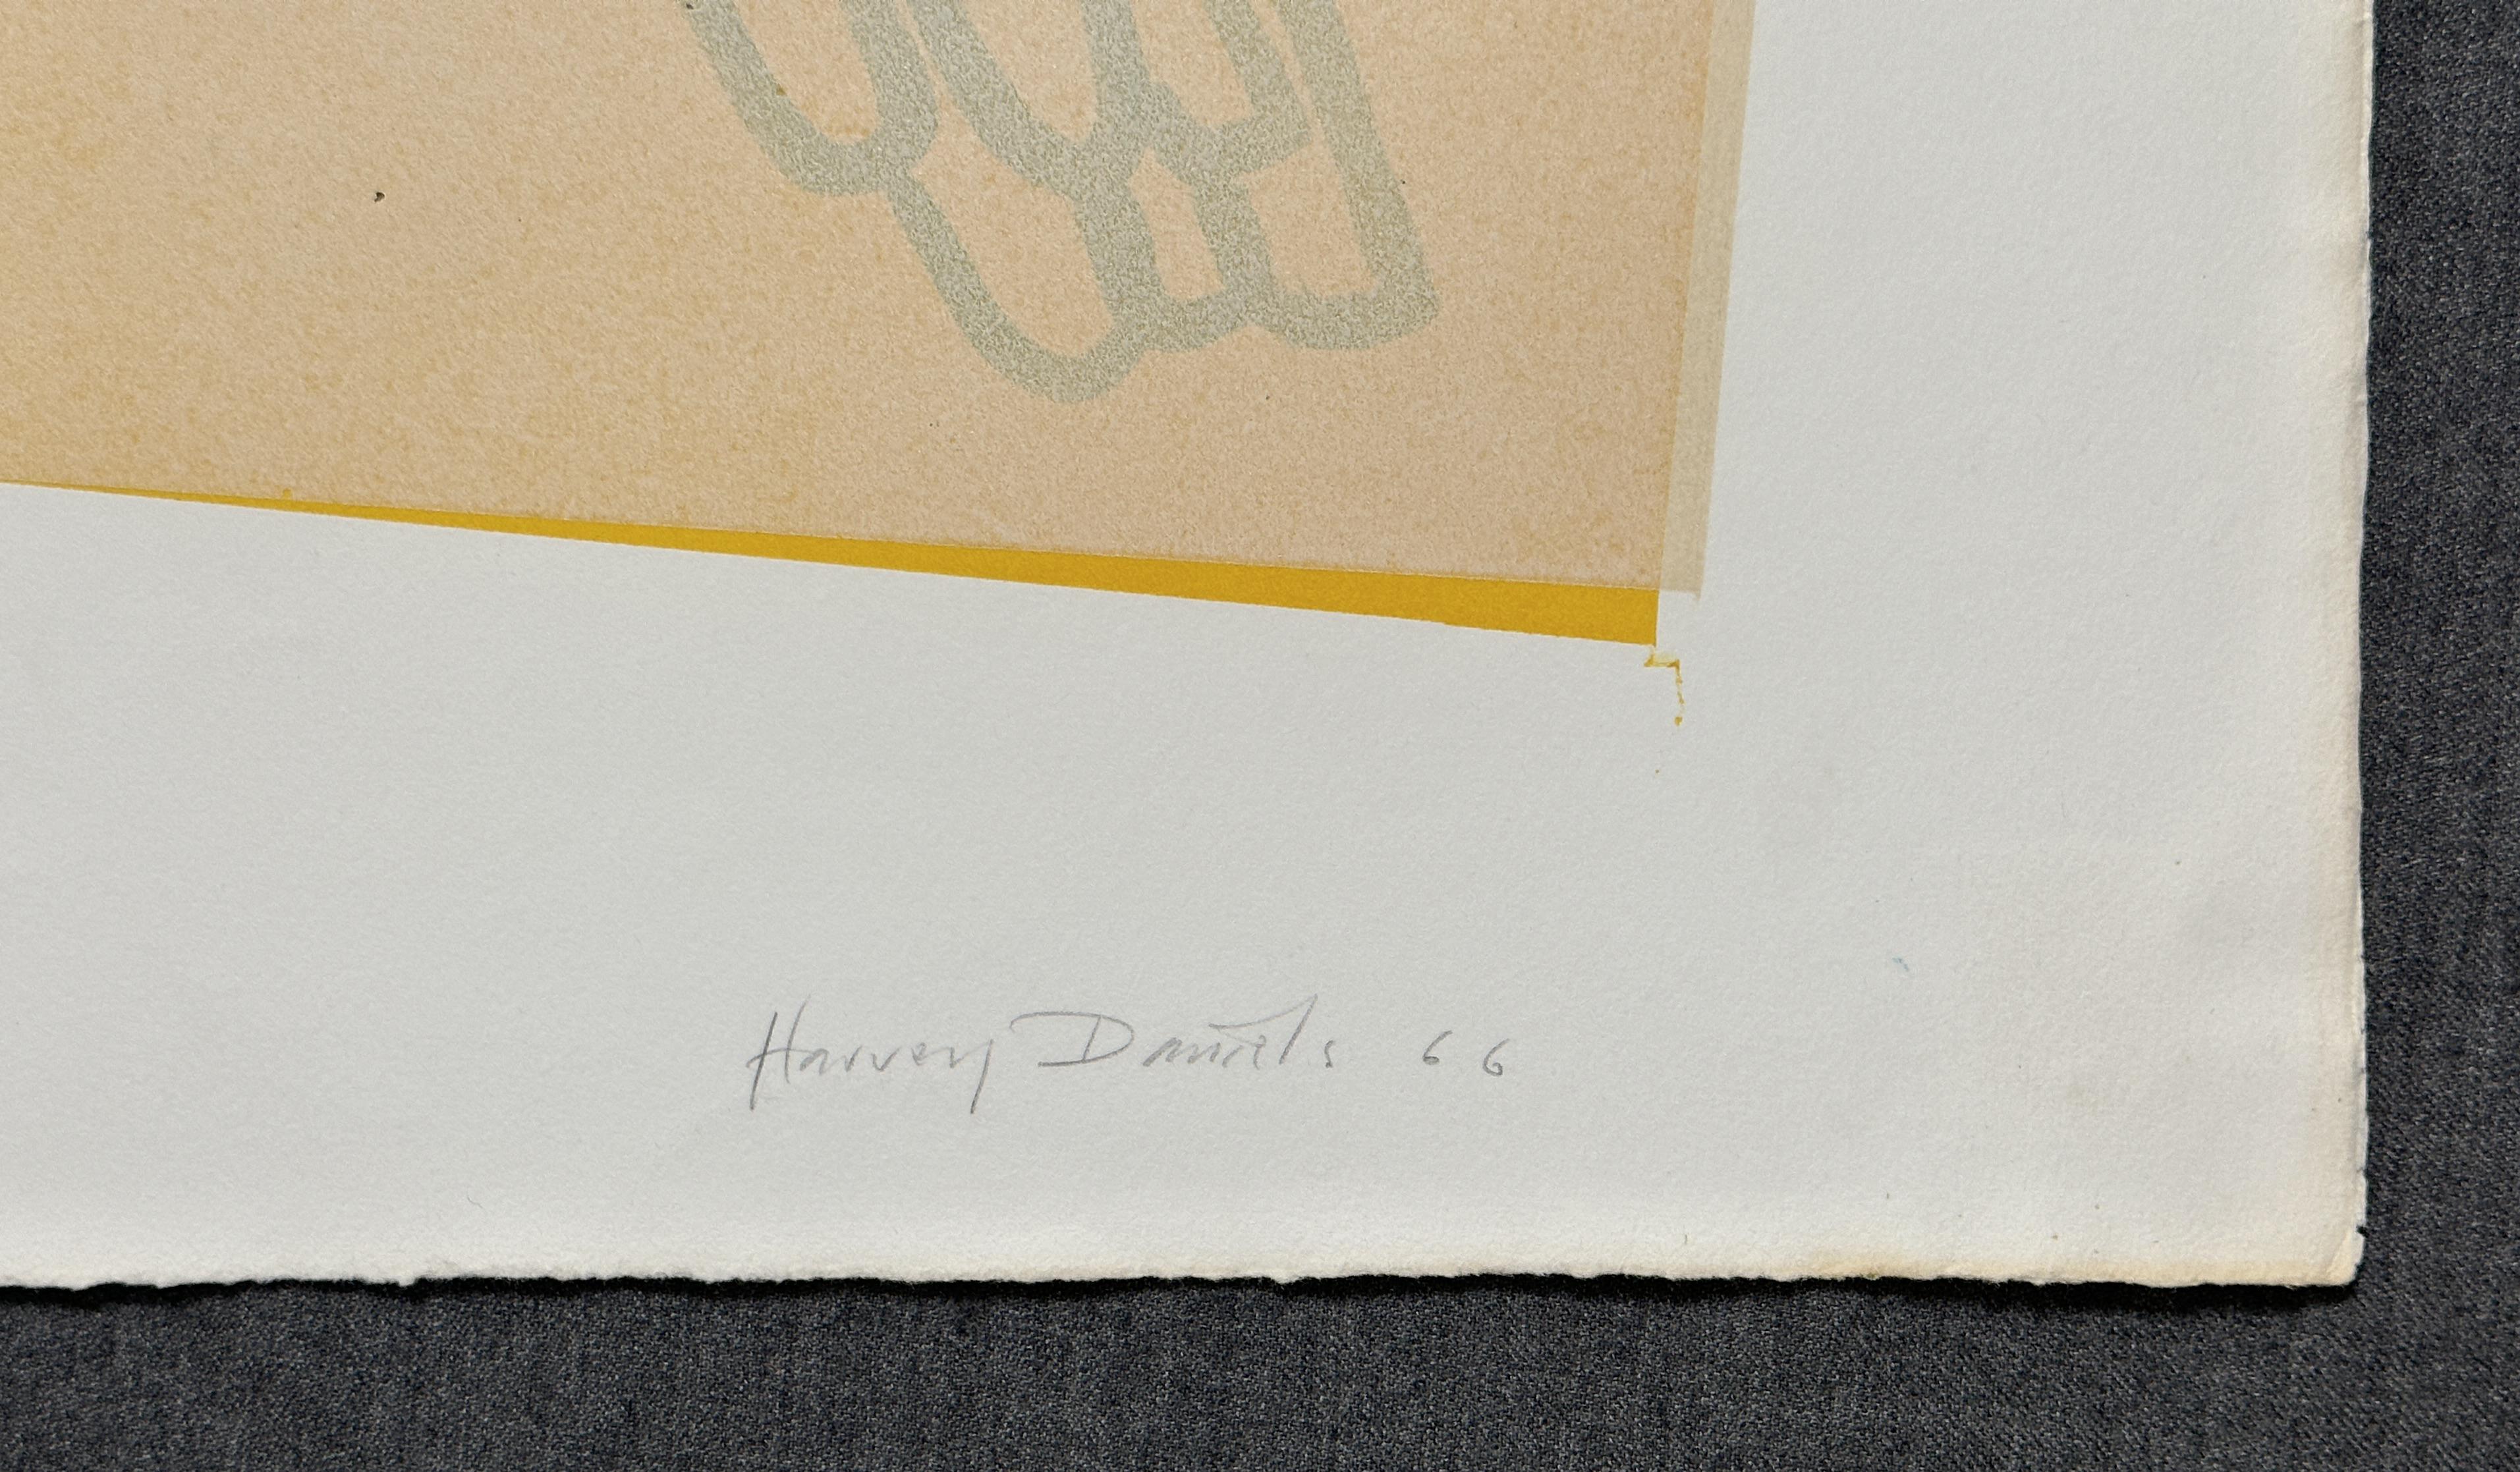 Deux perroquets - Lithographie originale signée de 1966 - Pop Art - Print de Harvey Daniels